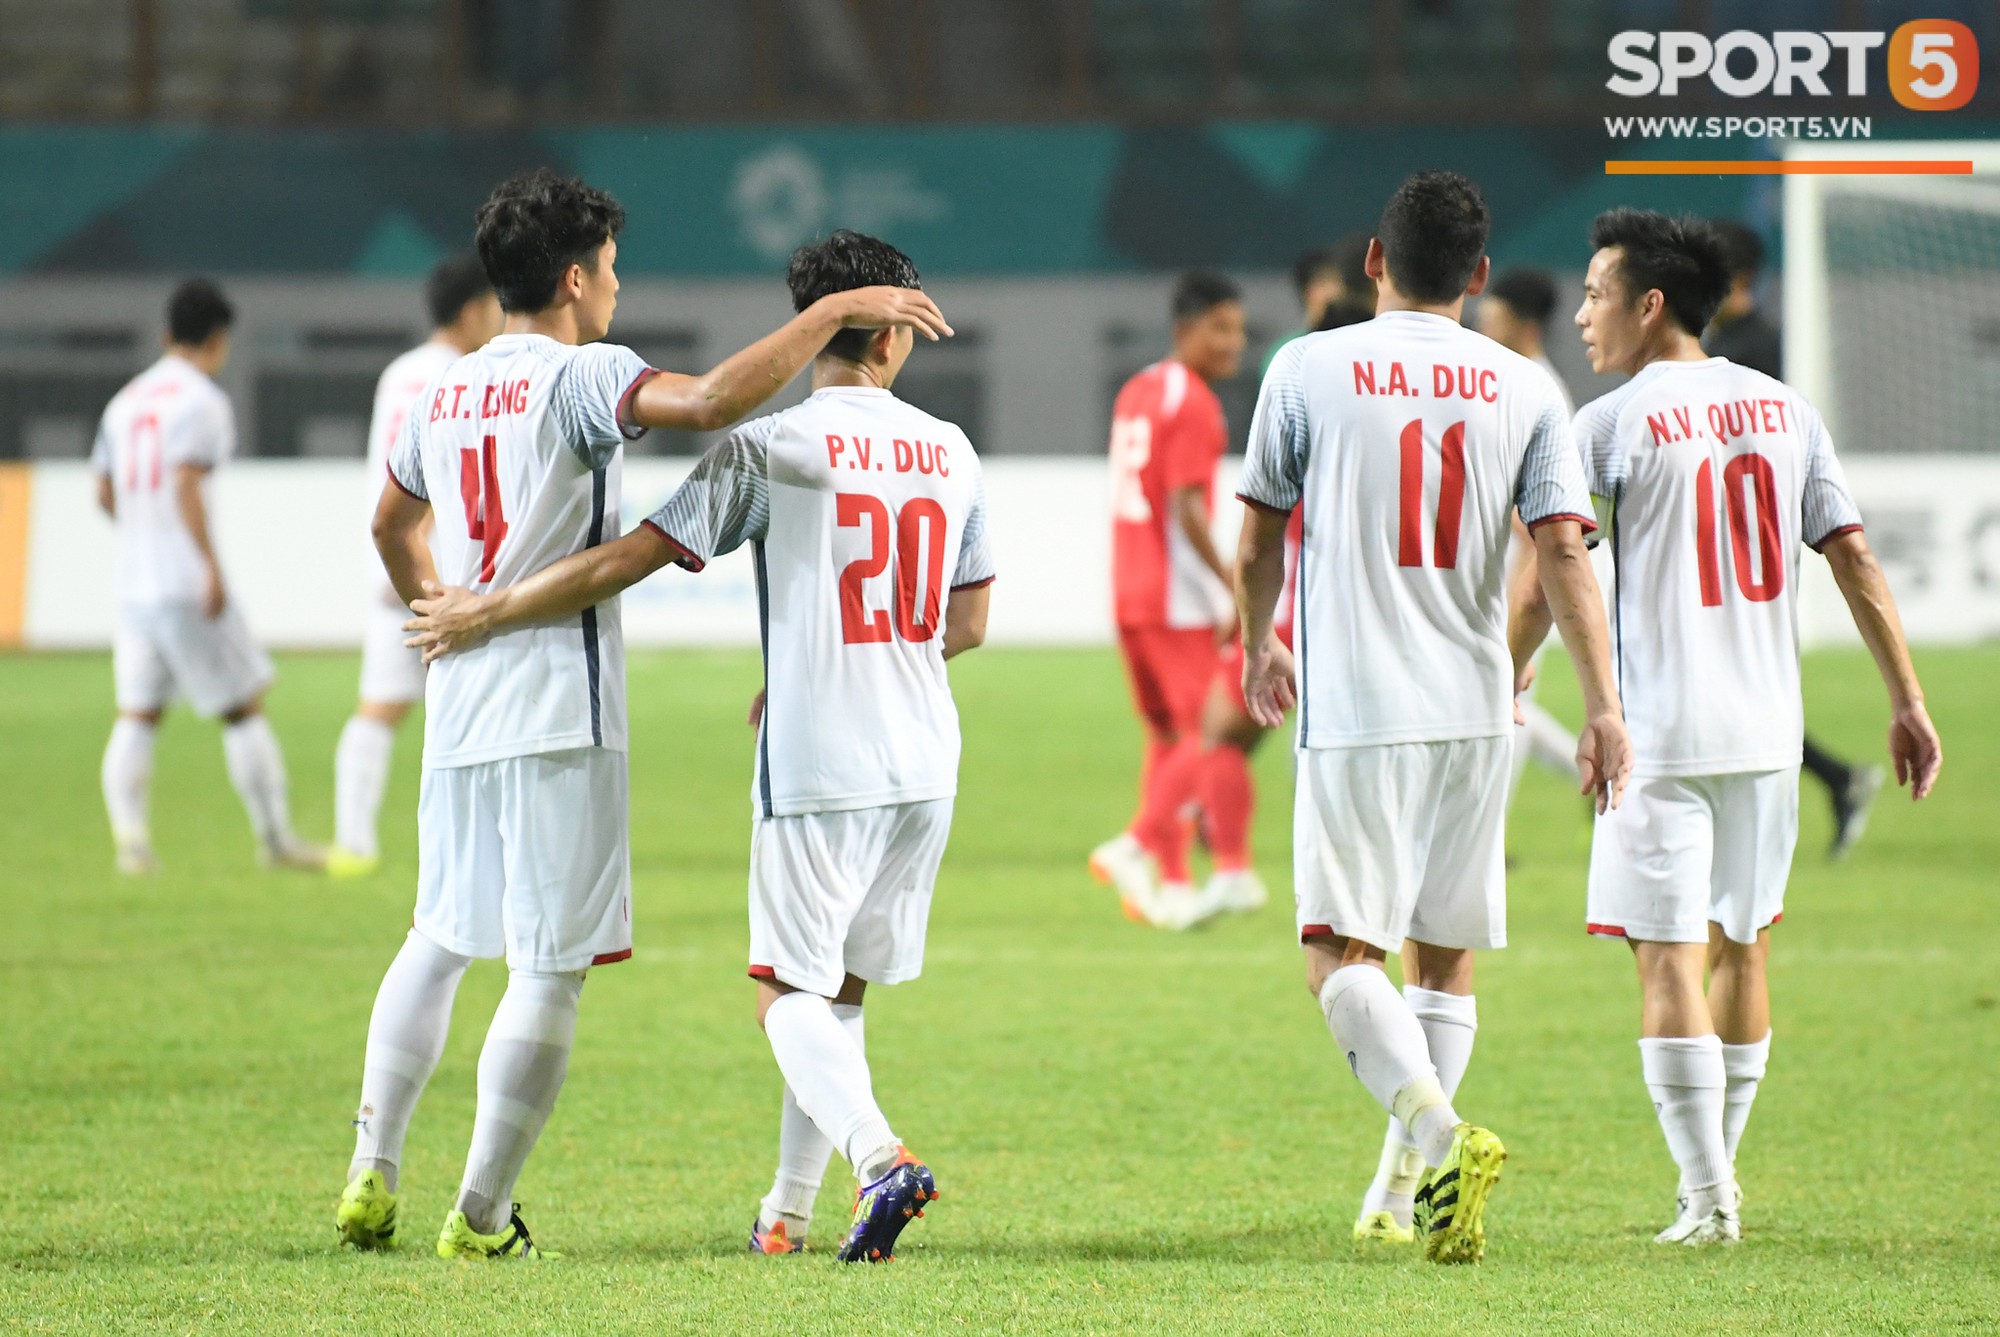 Trợ lý HLV Park Hang-seo tiết lộ bí quyết cải thiện thể lực của đội tuyển Việt Nam - Ảnh 3.